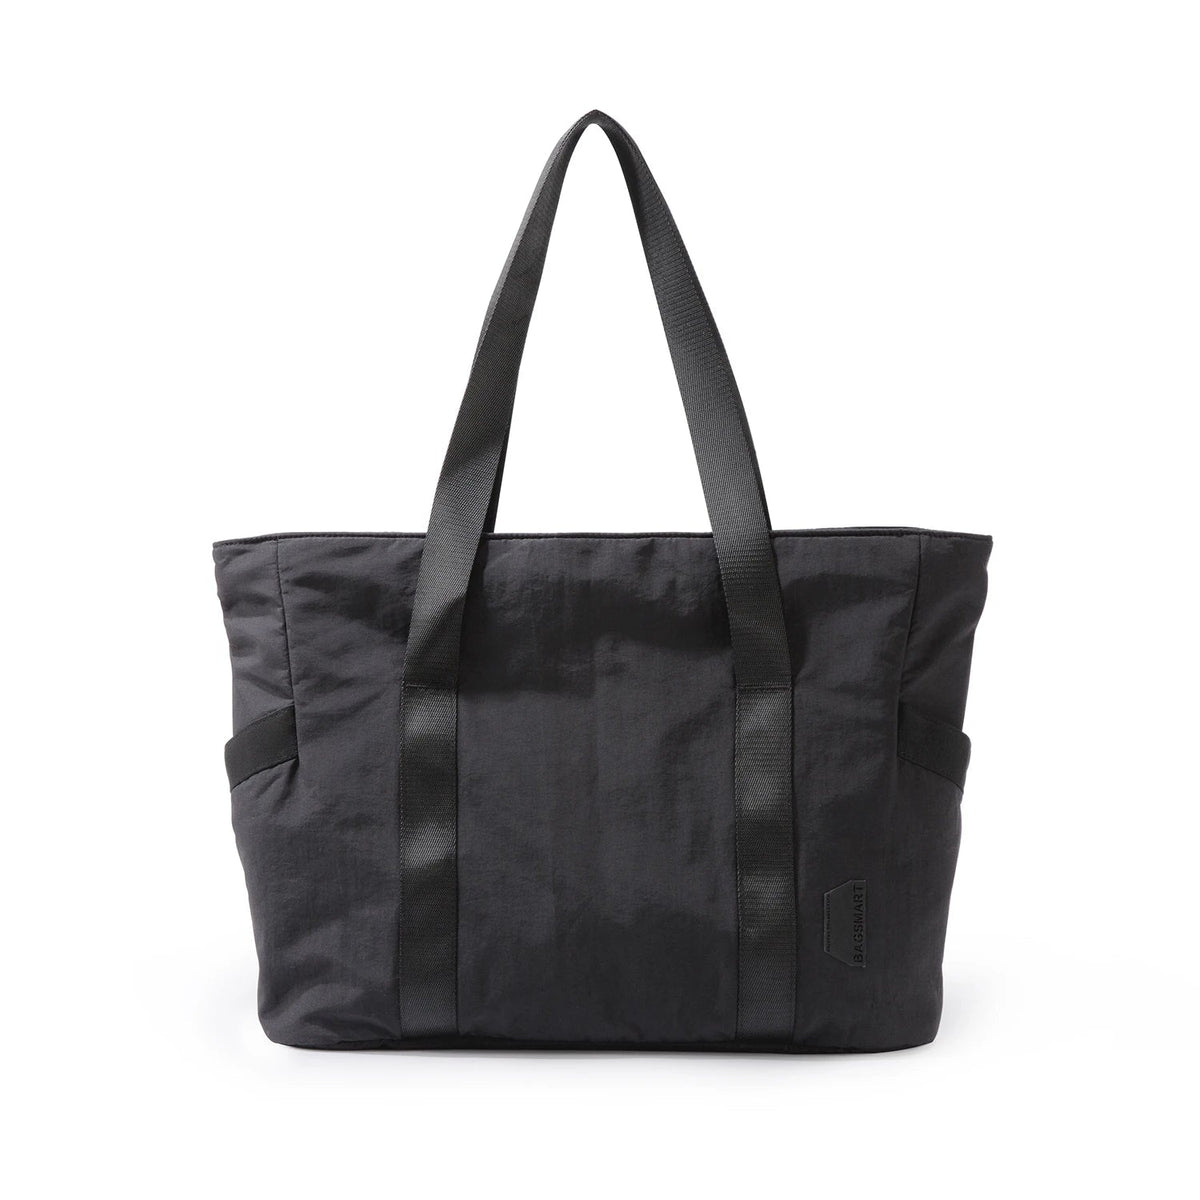 Large Capacity Women's Tote Bag Black M